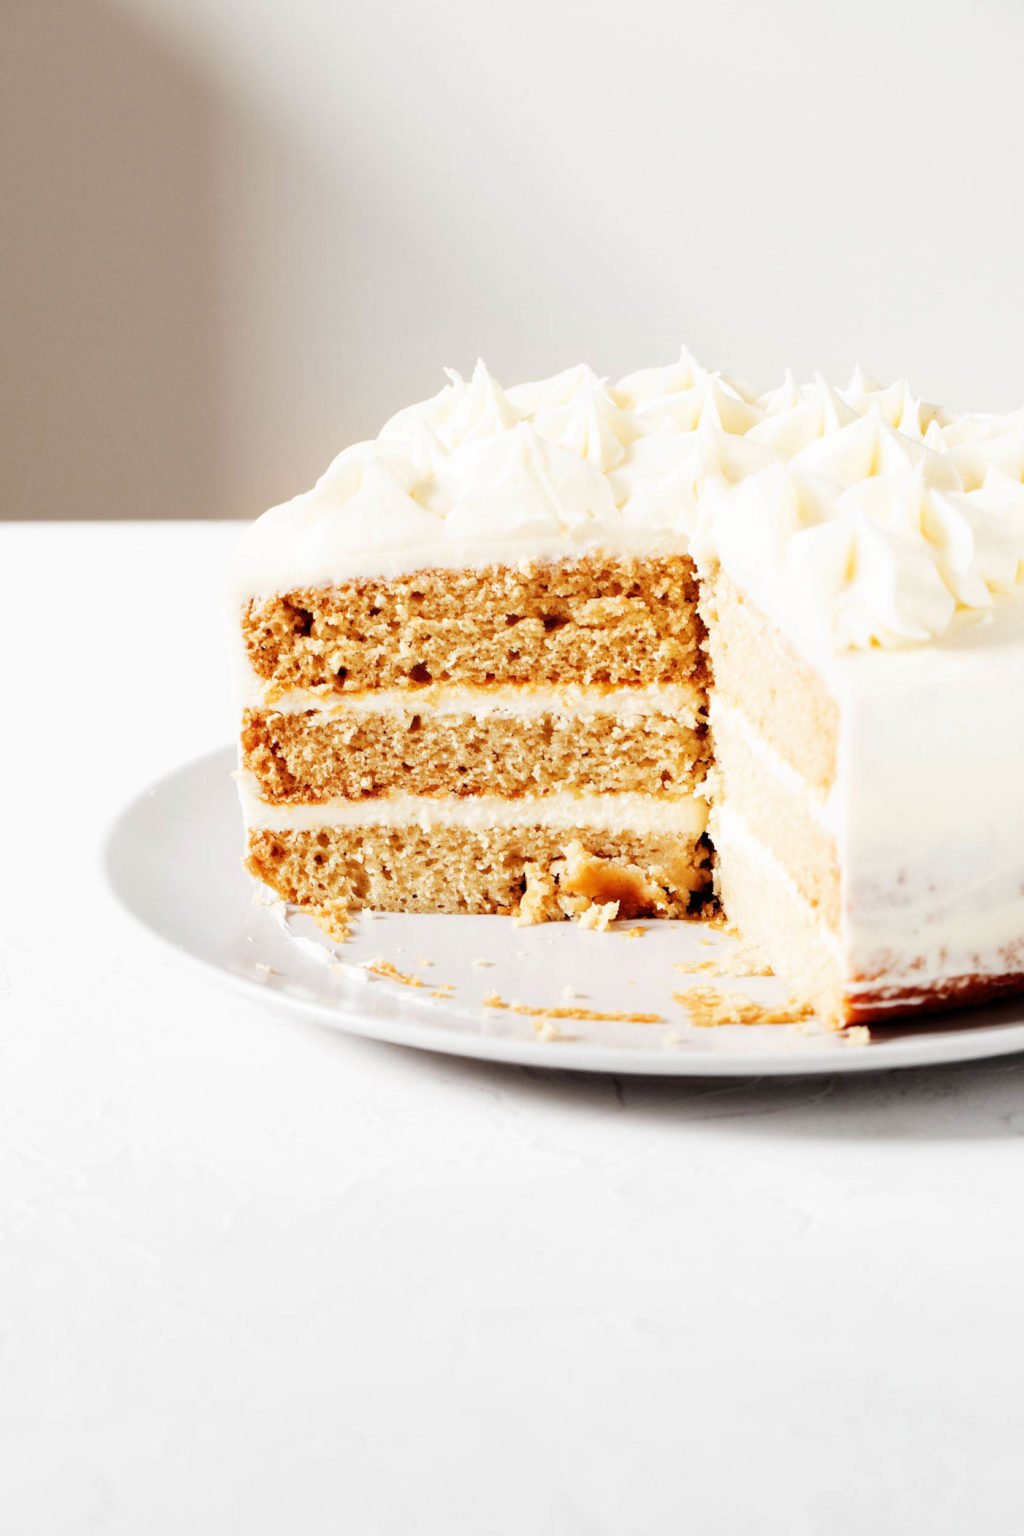 Un gâteau à la vanille à trois couches repose sur une assiette ronde.  Le gâteau est coupé en tranche et décoré de crème au beurre blanc.